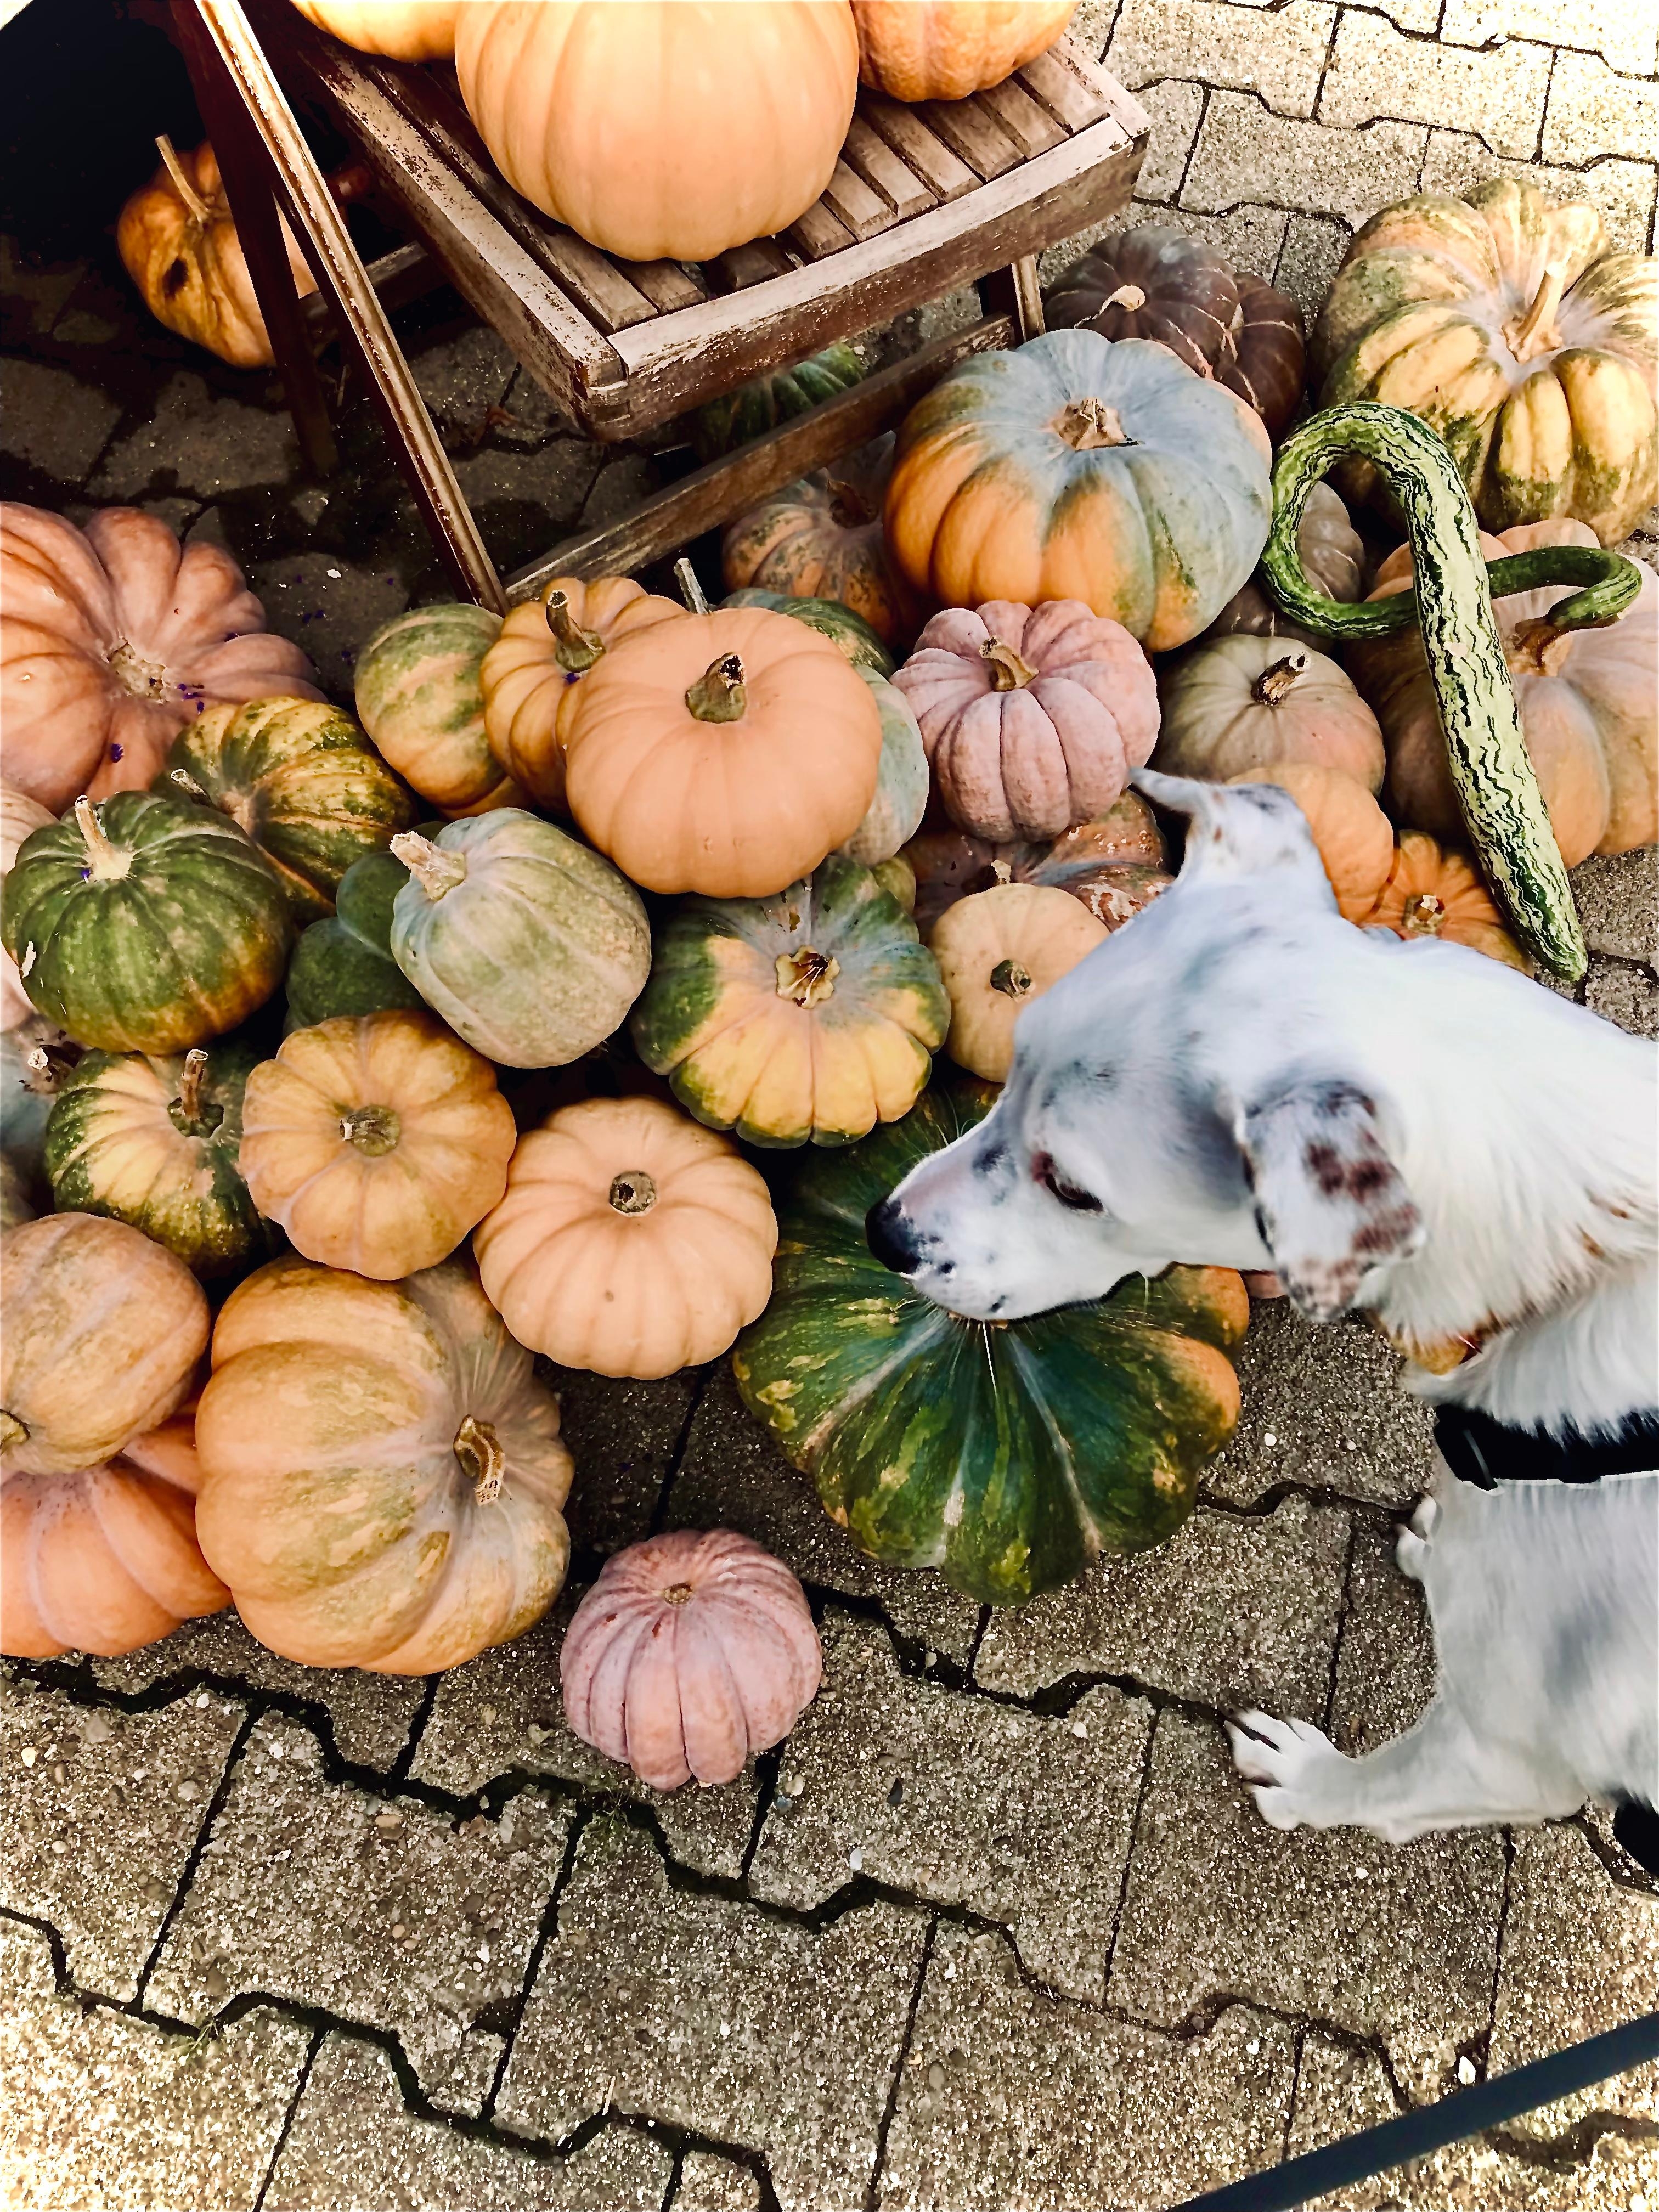 Avy und die pumpkins 🎃

#hofladen #herbsttag #pumpkin #doglove #outdoor 